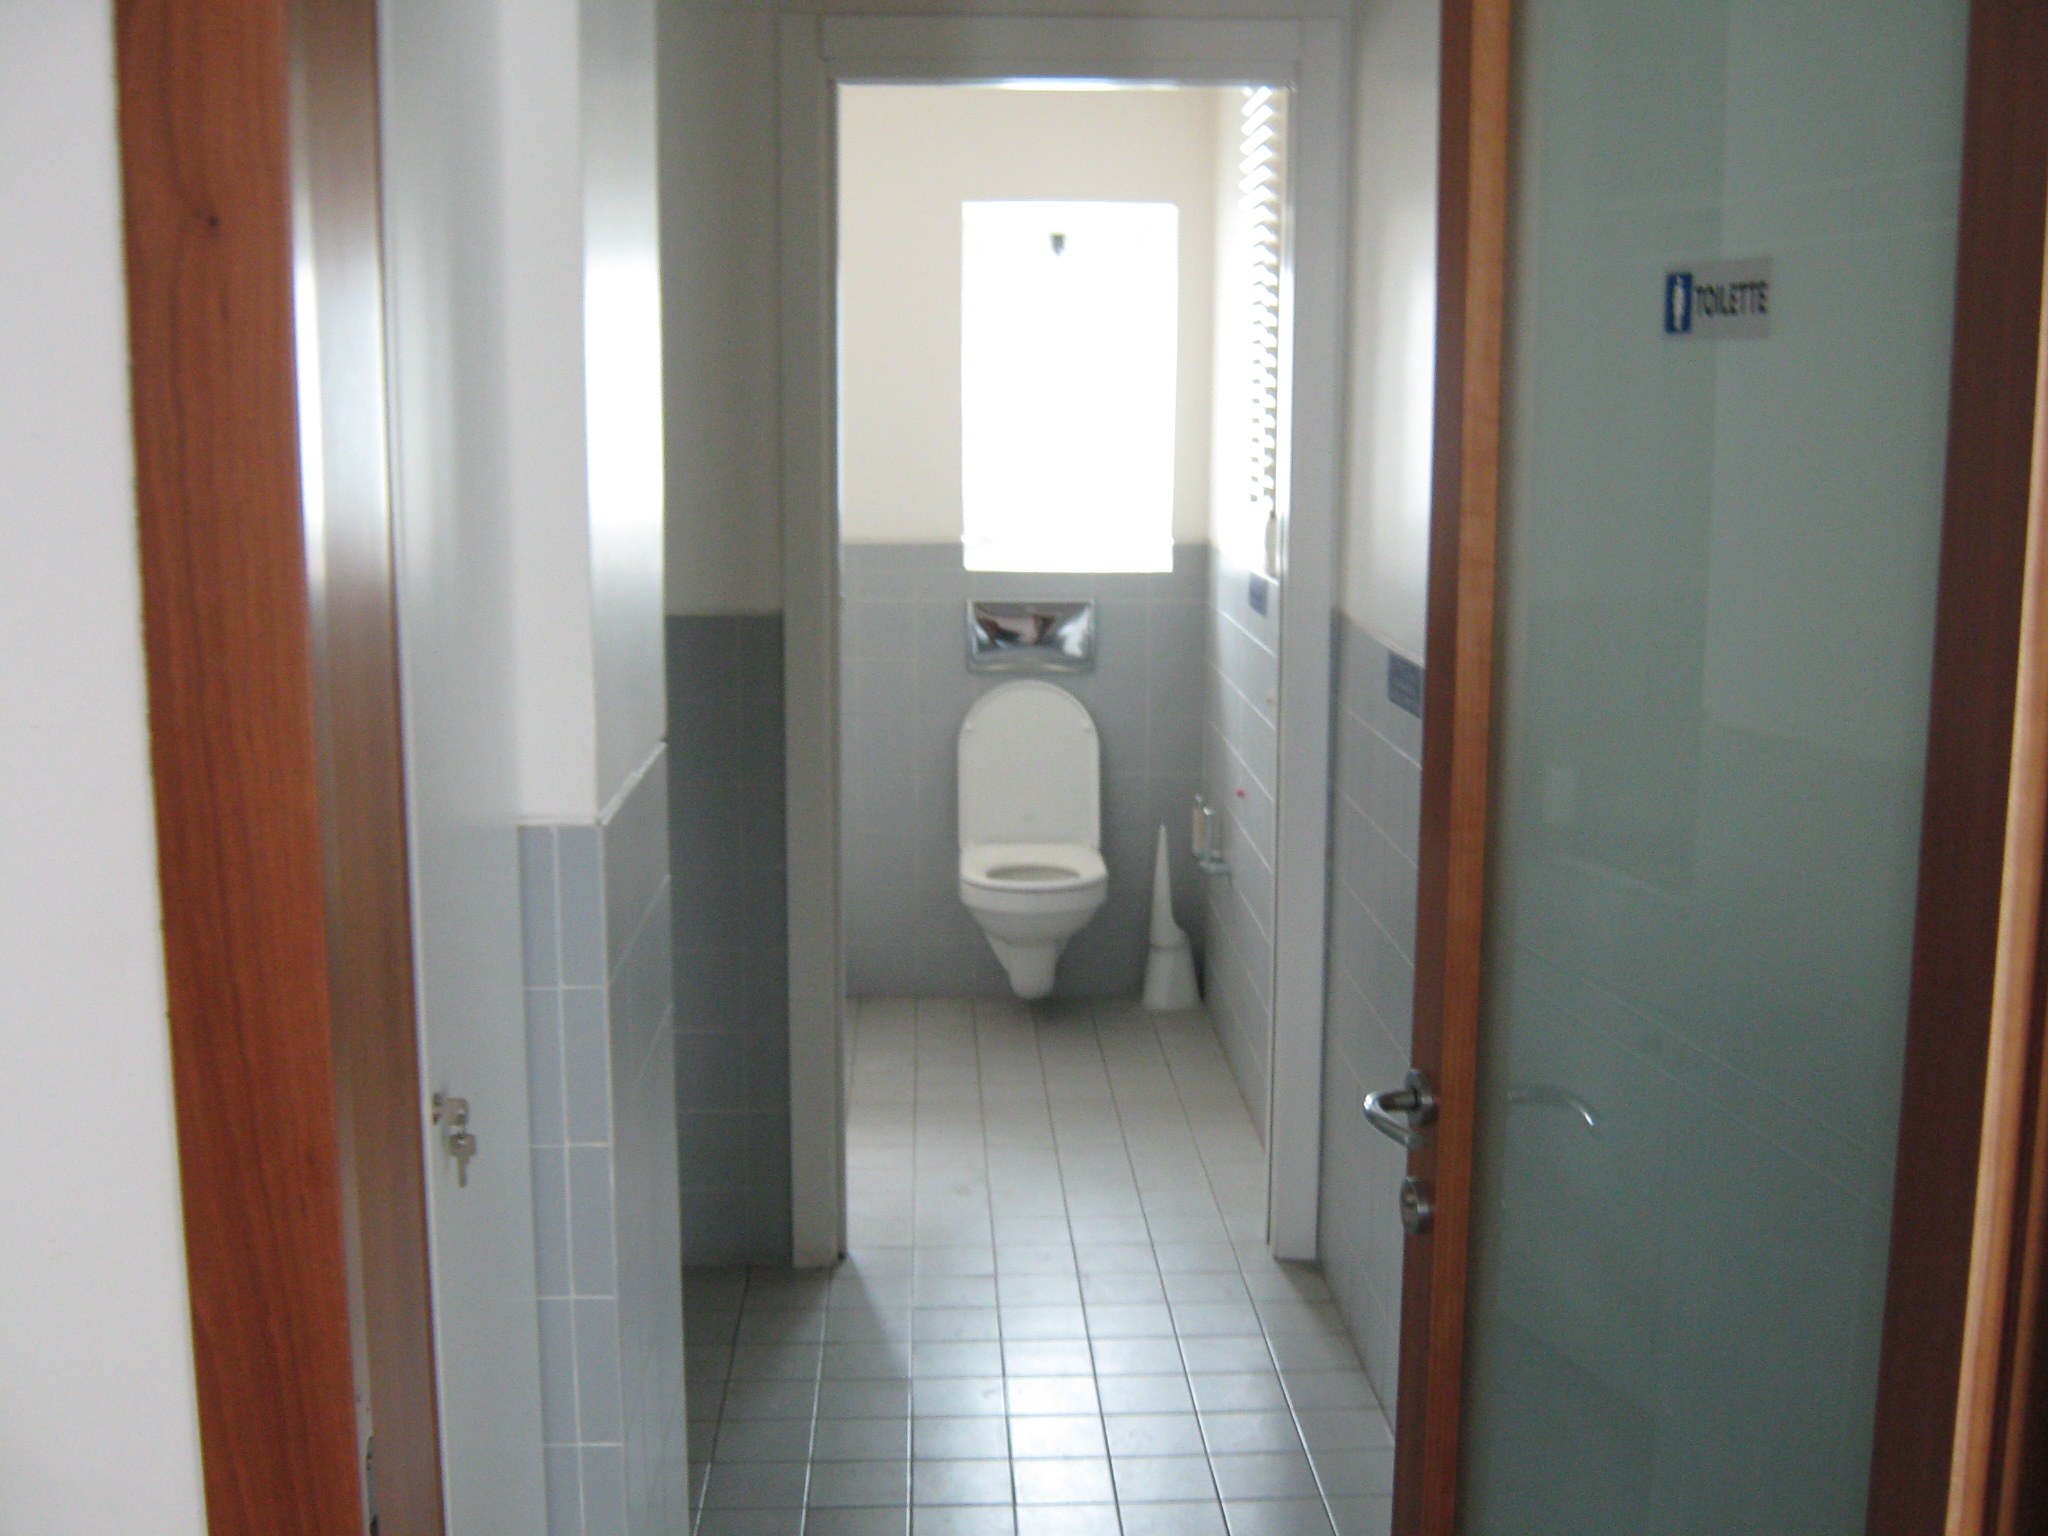 6. Locale bagno con sanitari sospesi a parete, pavimenti e pareti rivestiti con piastrelle ceramiche: stato di fatto.